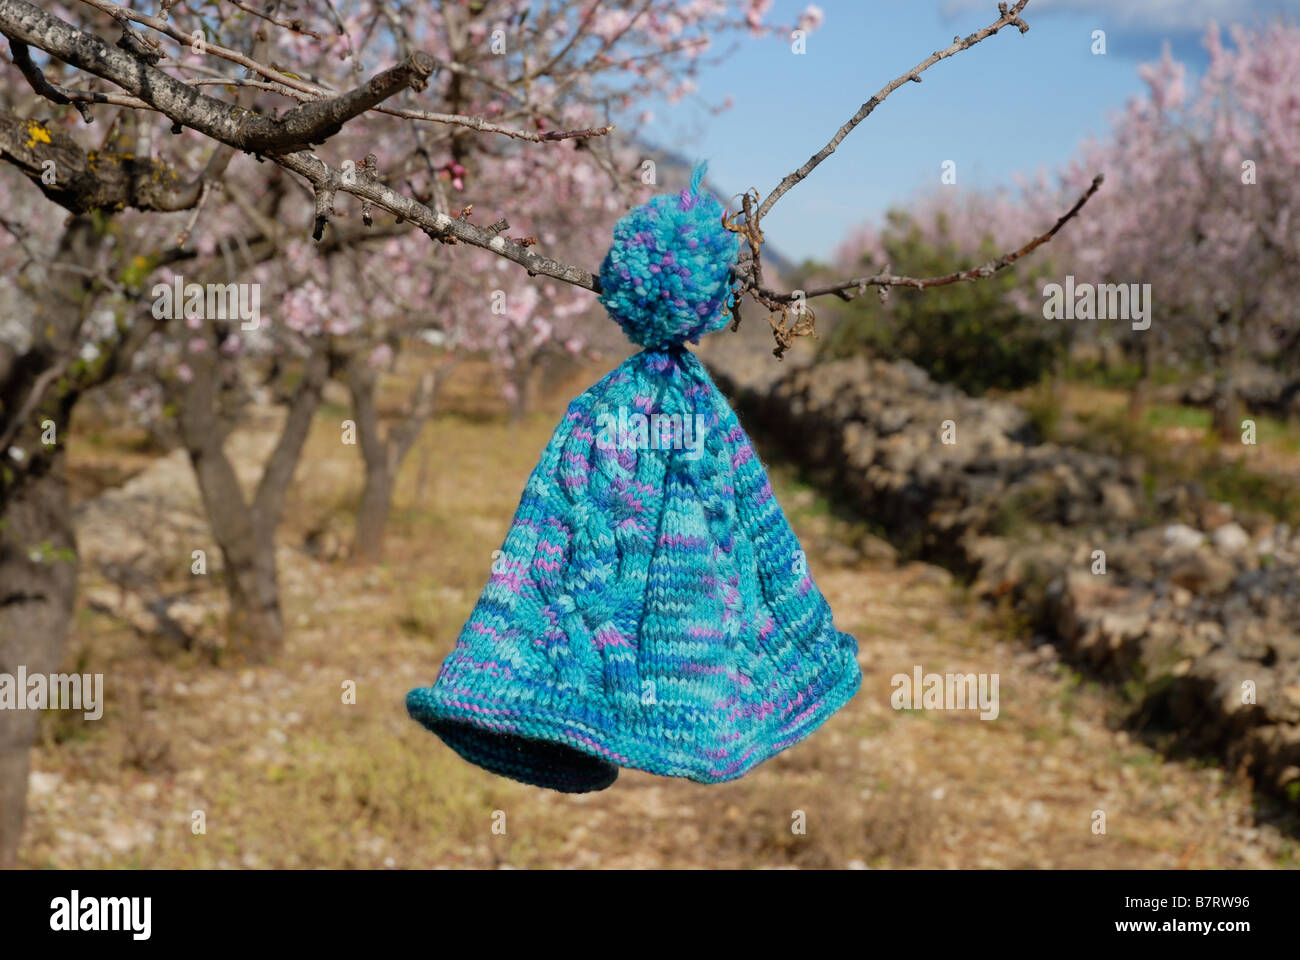 Tejidas a Mano de lana azul bobble hat colgando en un almendro, Valle del Jalón, provincia de Alicante, Comunidad Valenciana, España Foto de stock